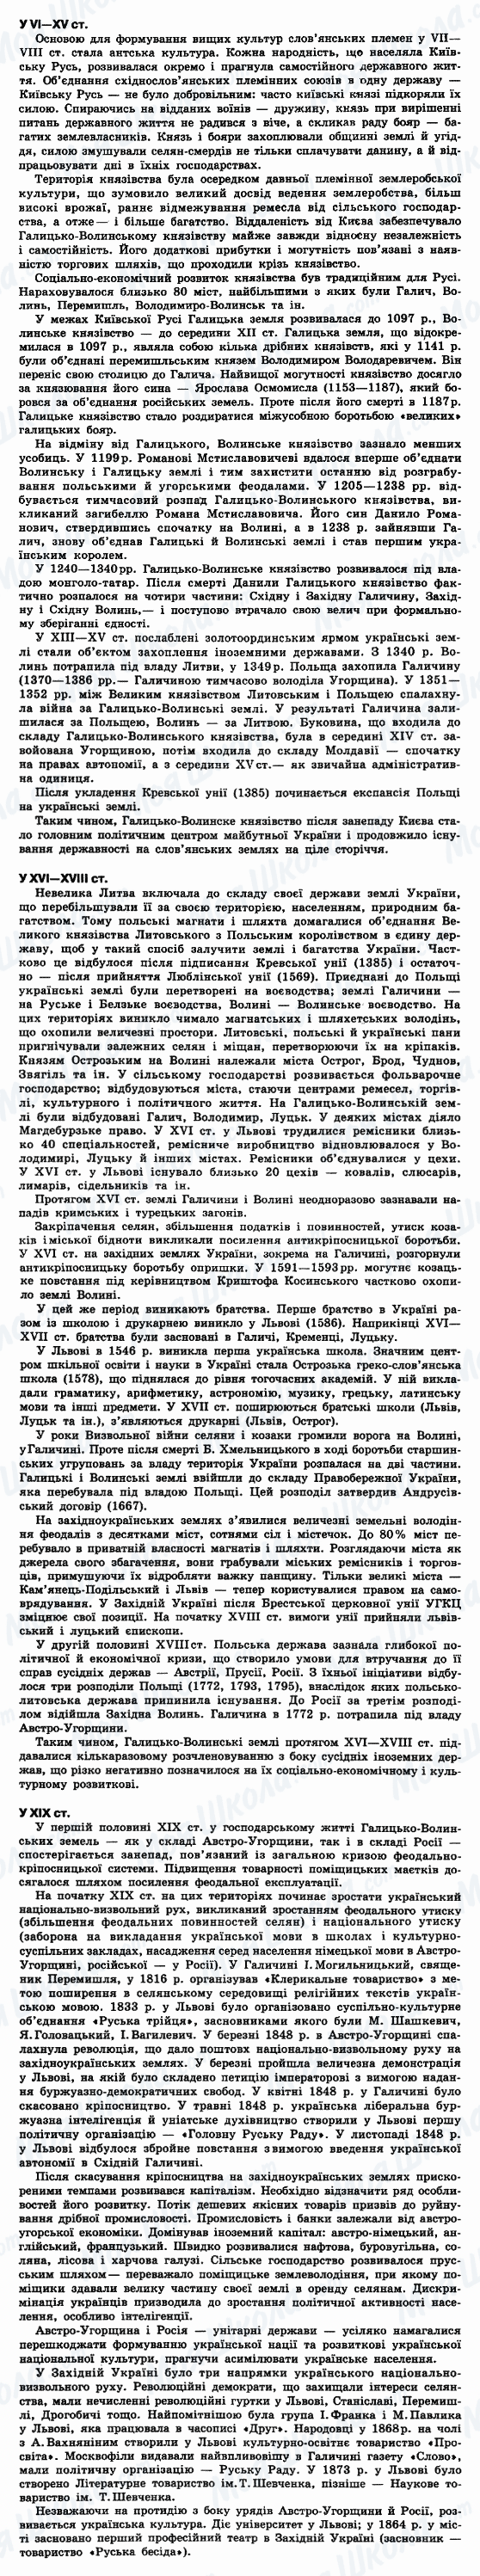 ДПА Історія України 9 клас сторінка 1